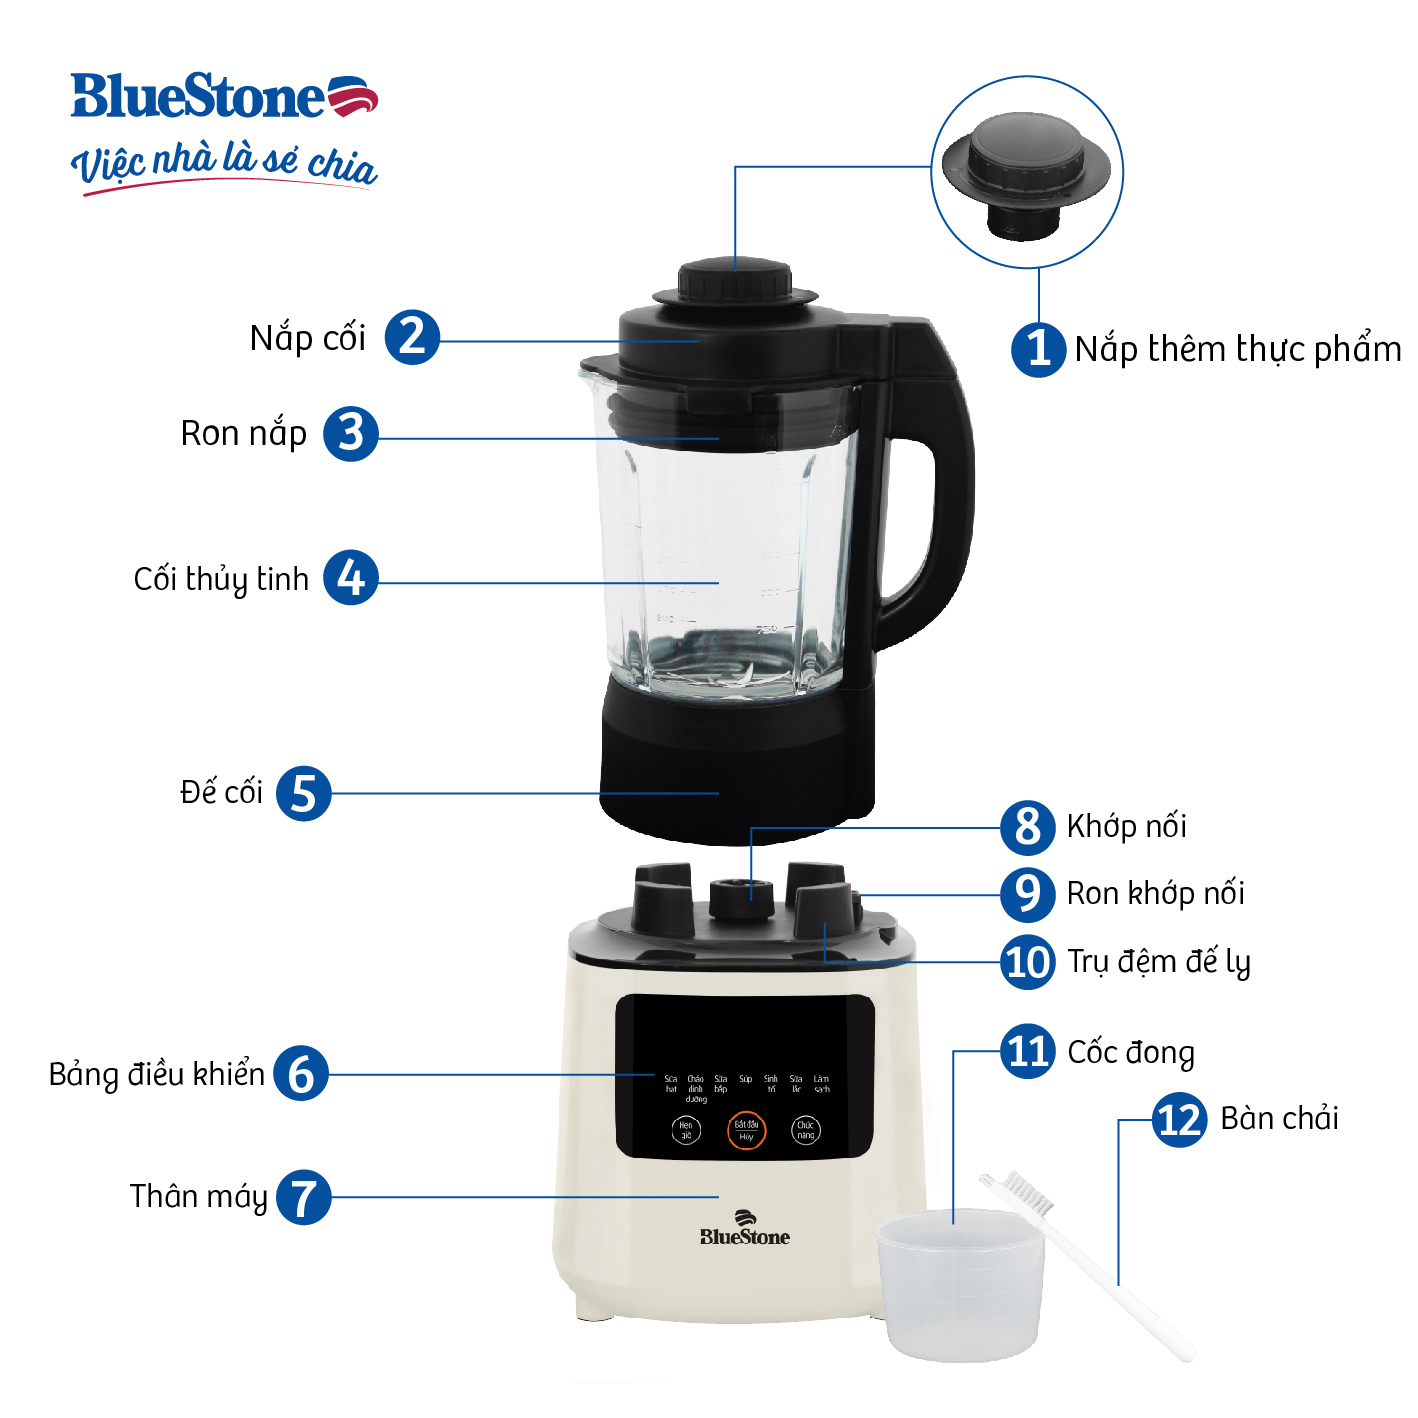 Máy xay sinh tố, làm sữa hạt xay nấu đa năng BlueStone BLB-6035 - 6 chế độ xay nấu-Bảo hành...